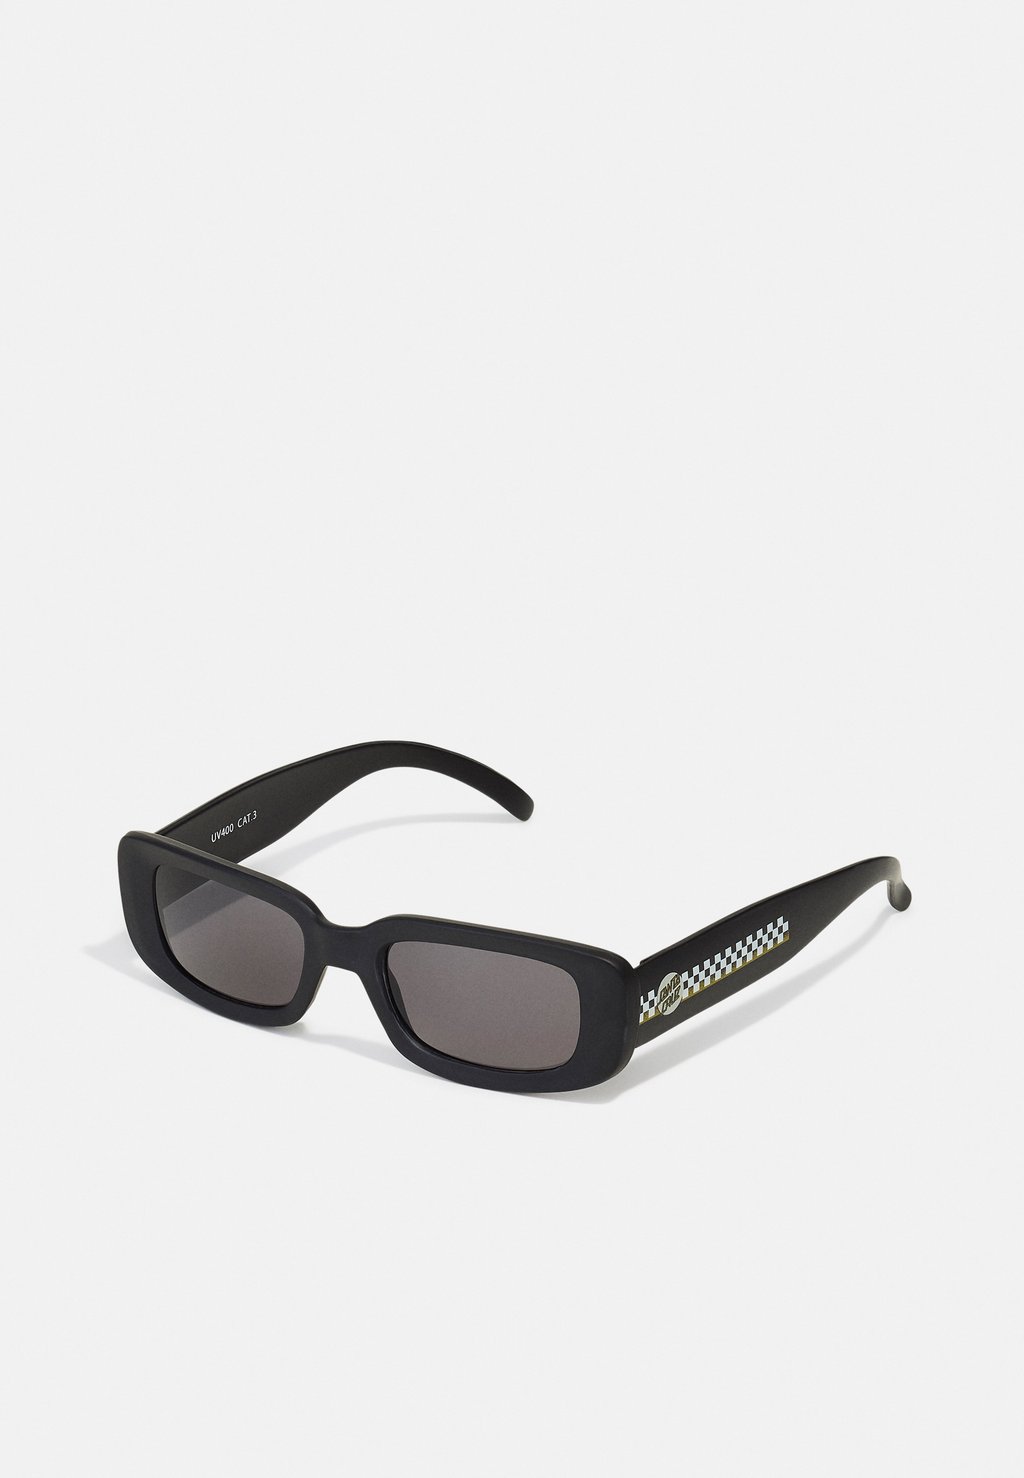 Солнцезащитные очки Santa Cruz, черный фотографии